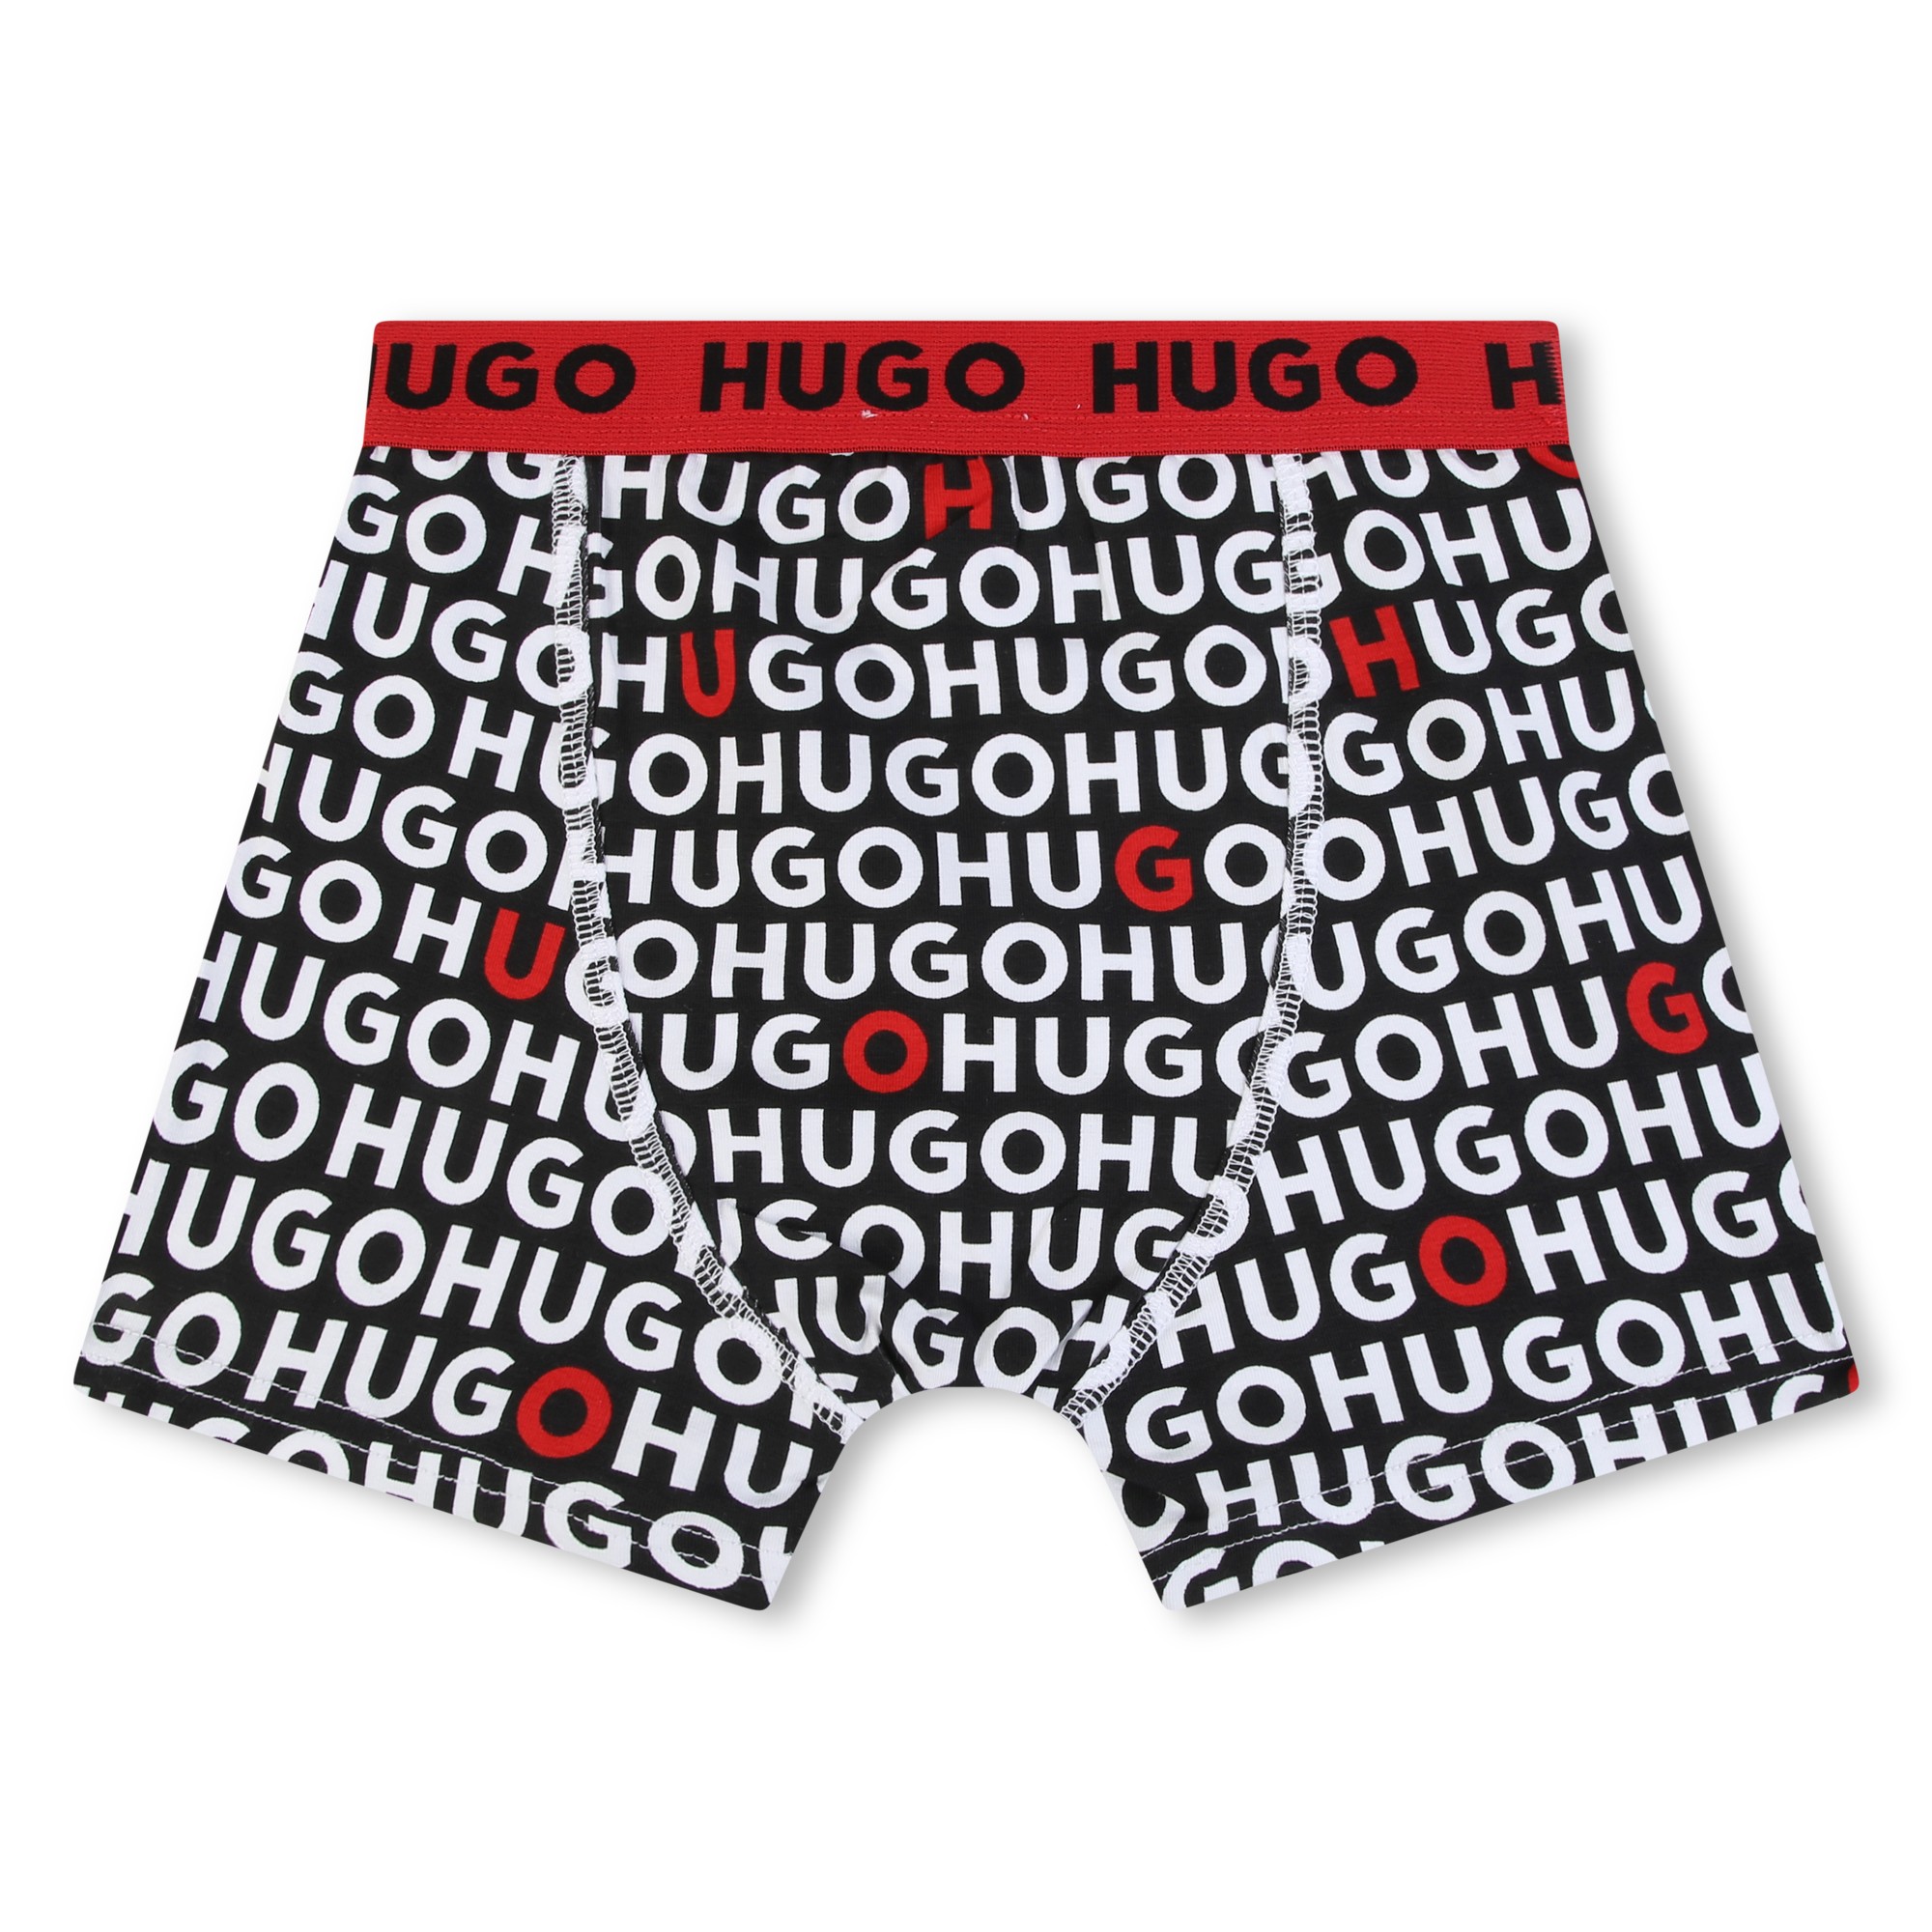 Set van twee boxershorts HUGO Voor